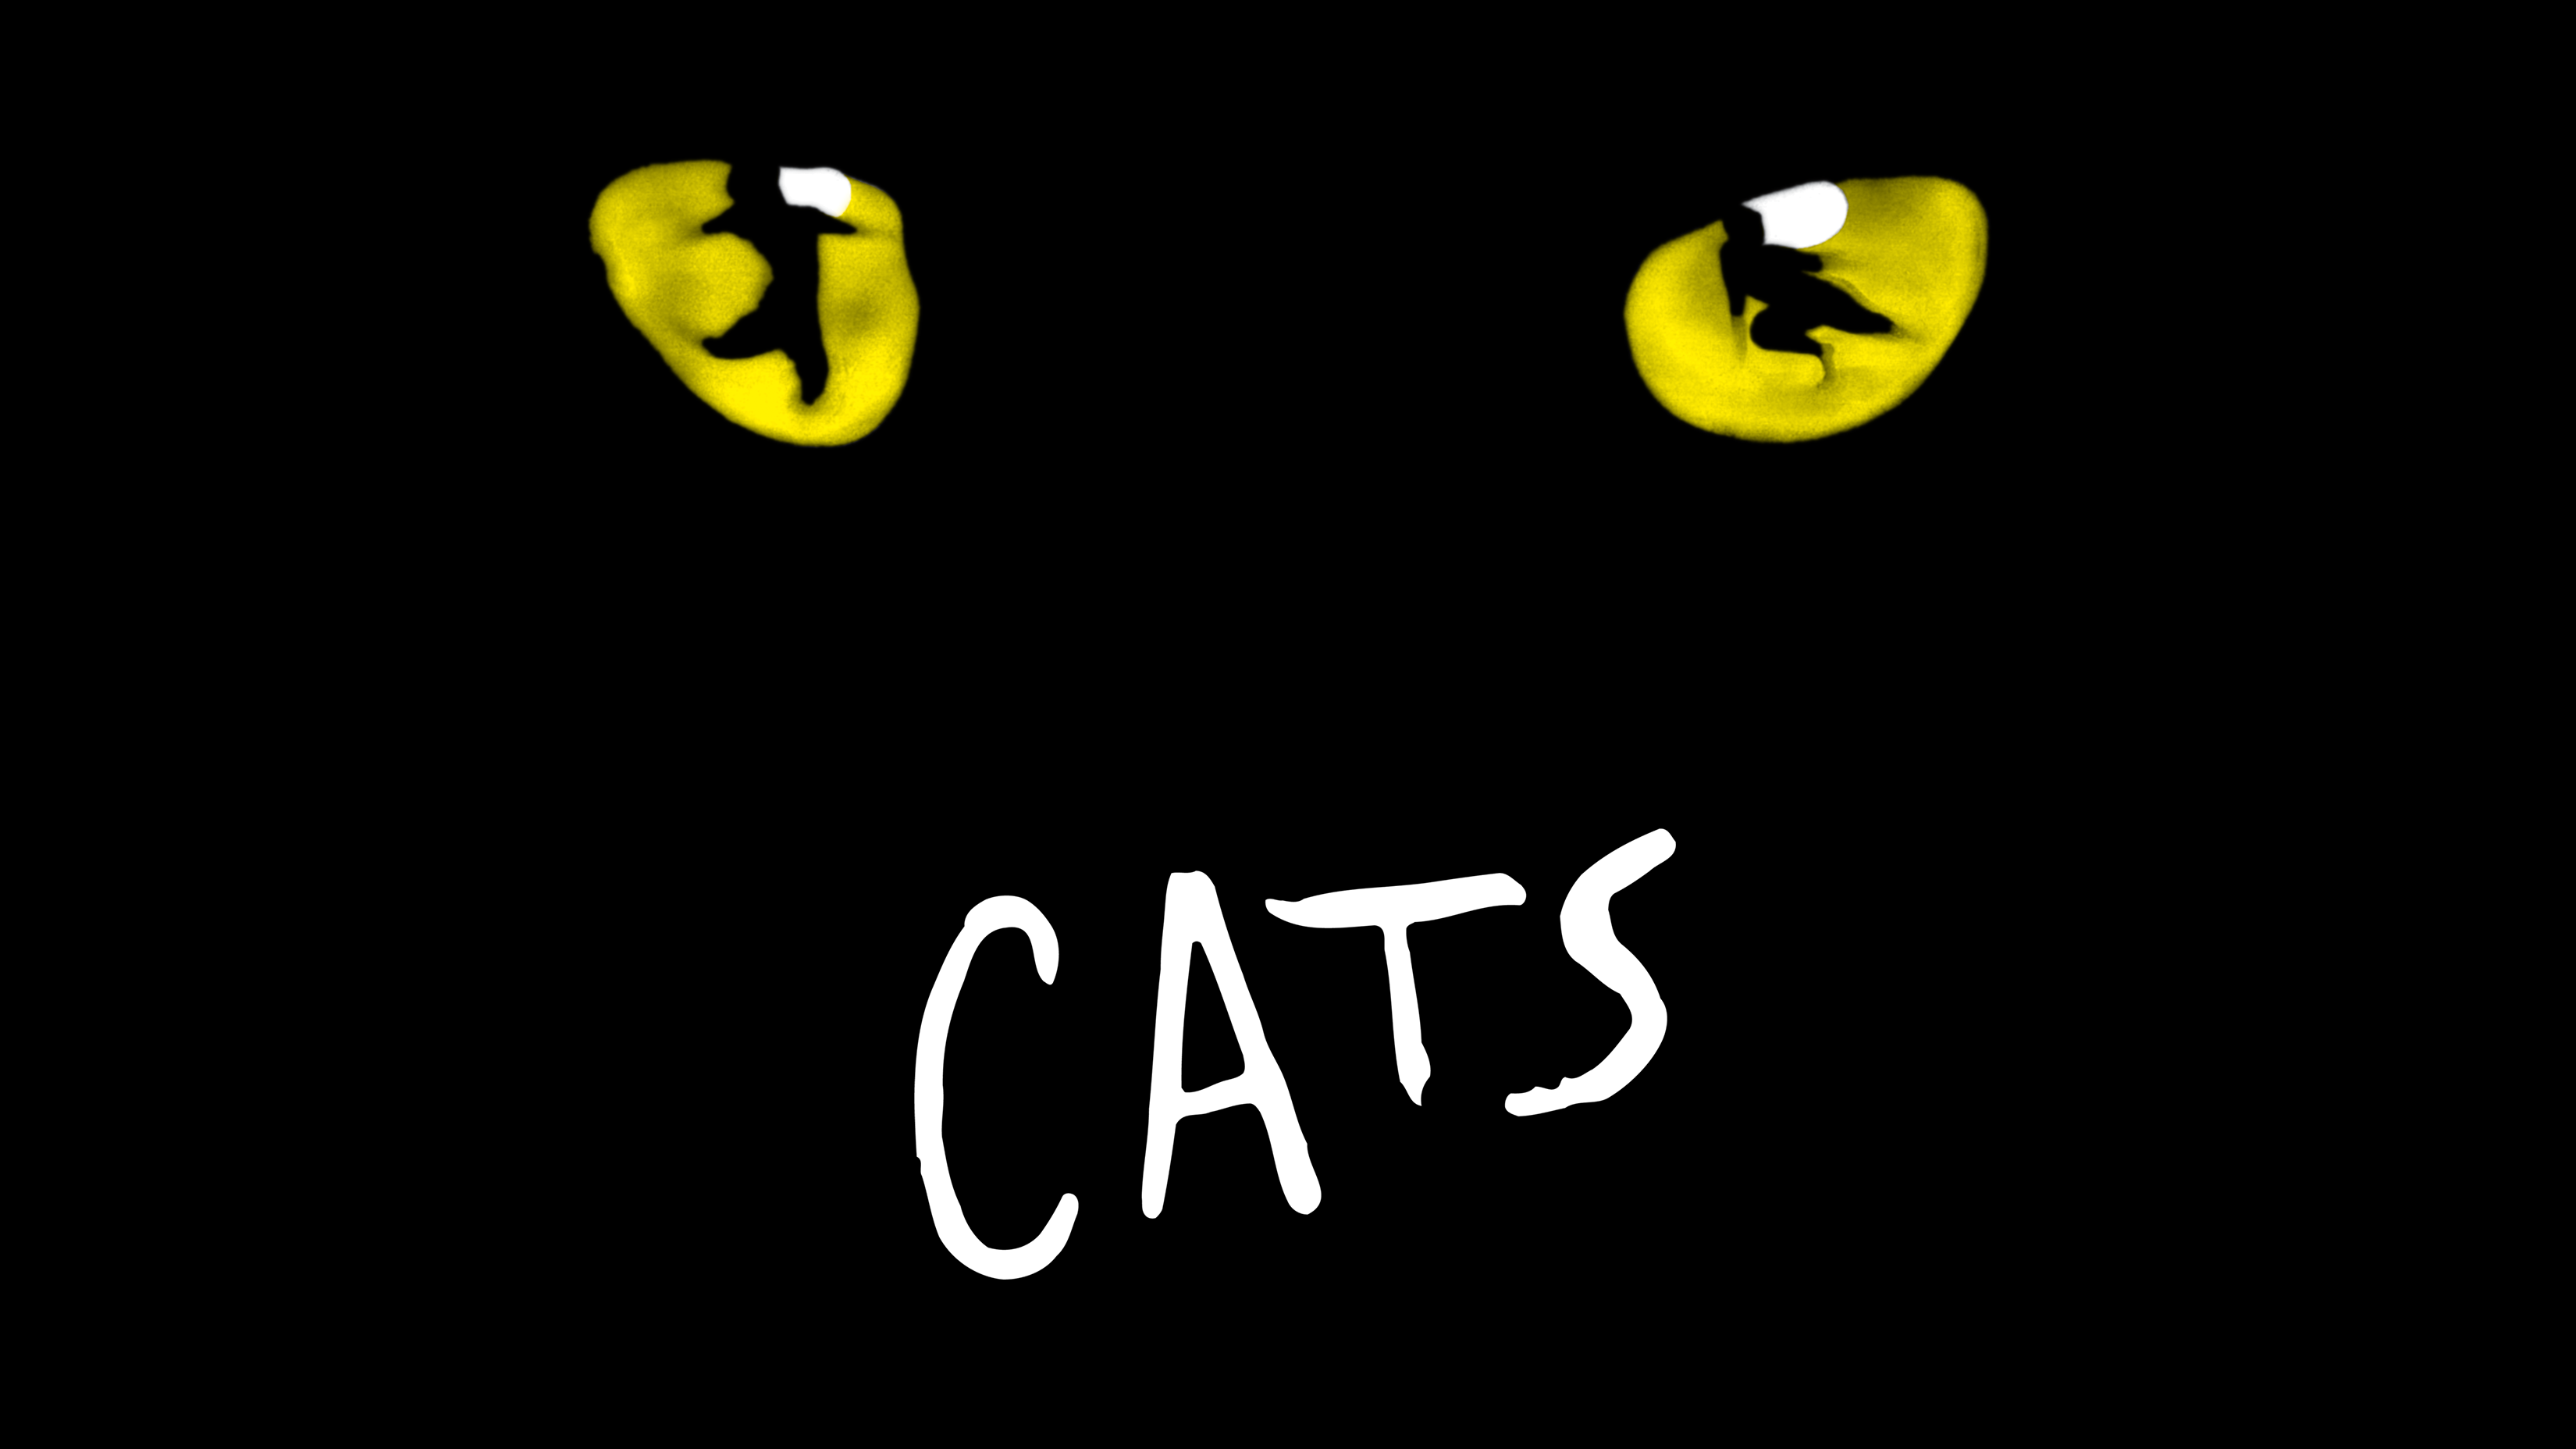 (c) Catsthemusical.com